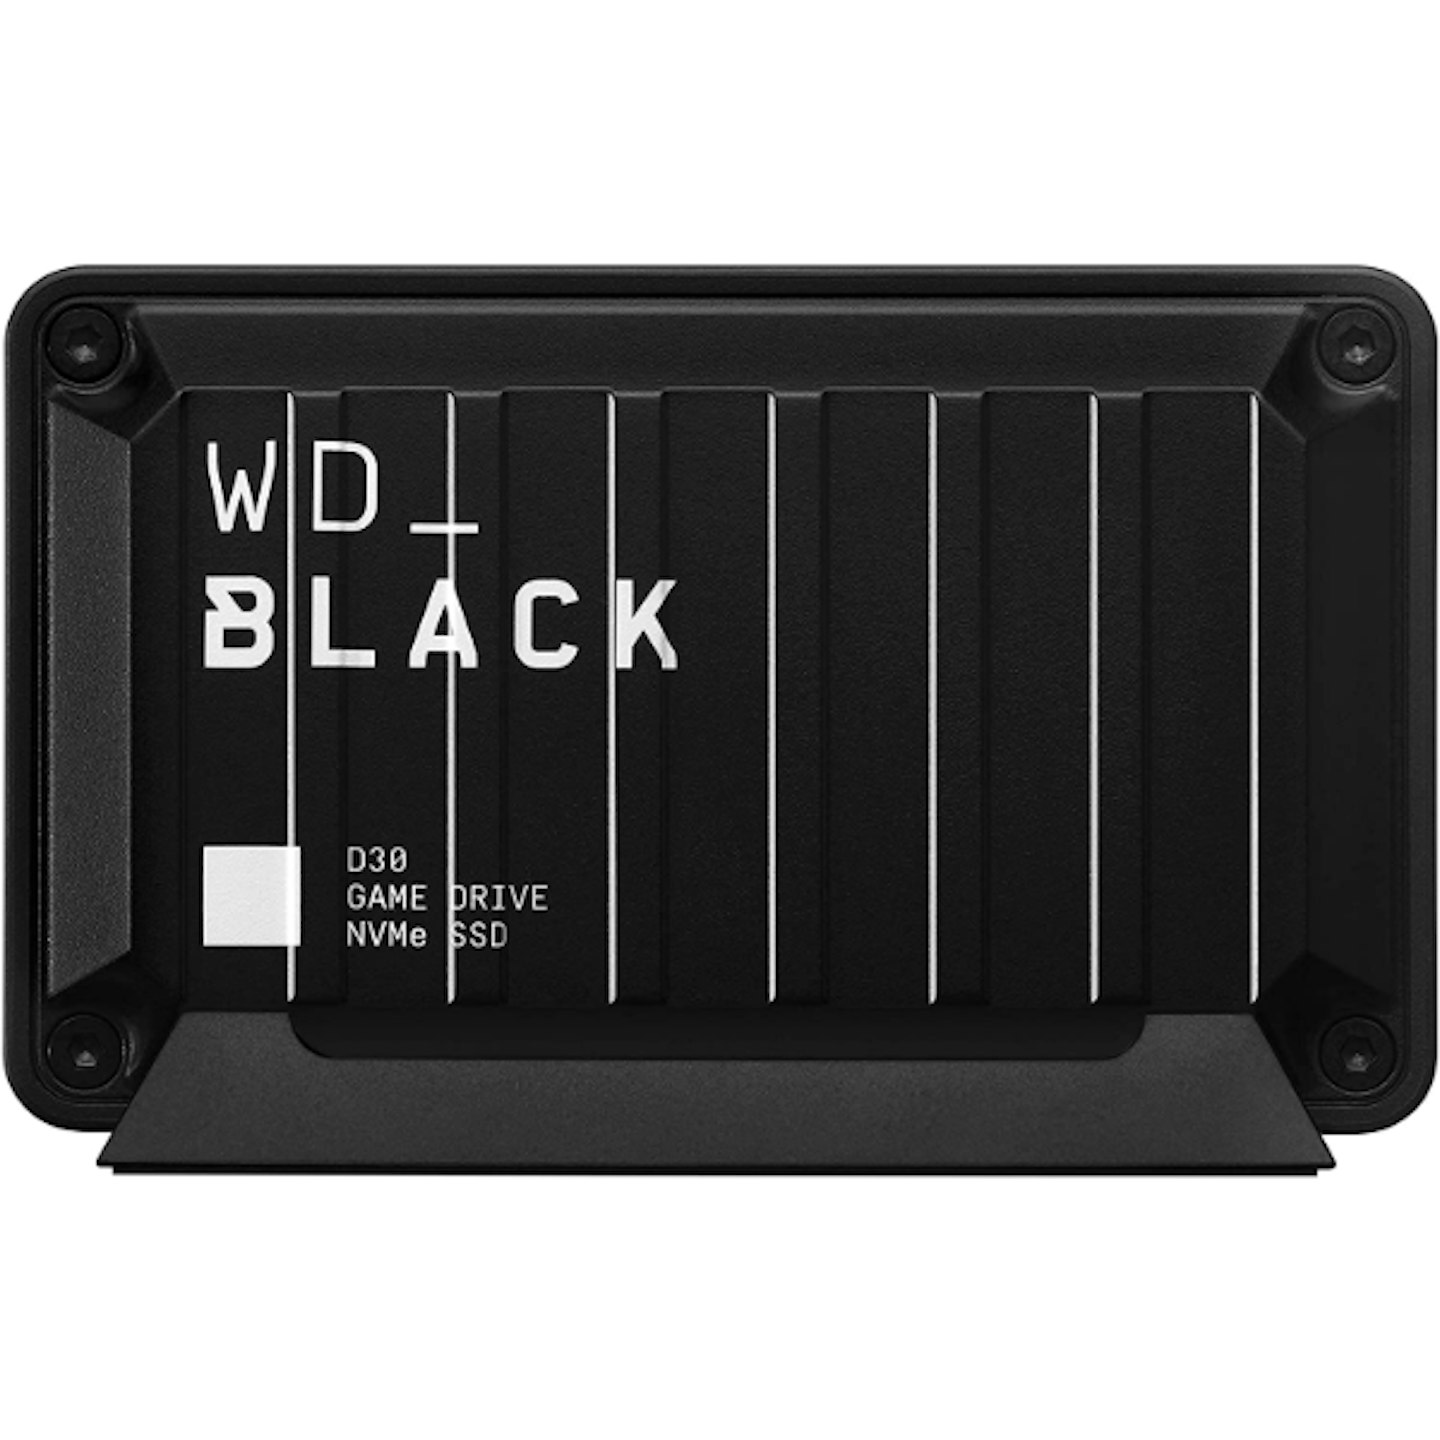 WD_Black D30 SSD